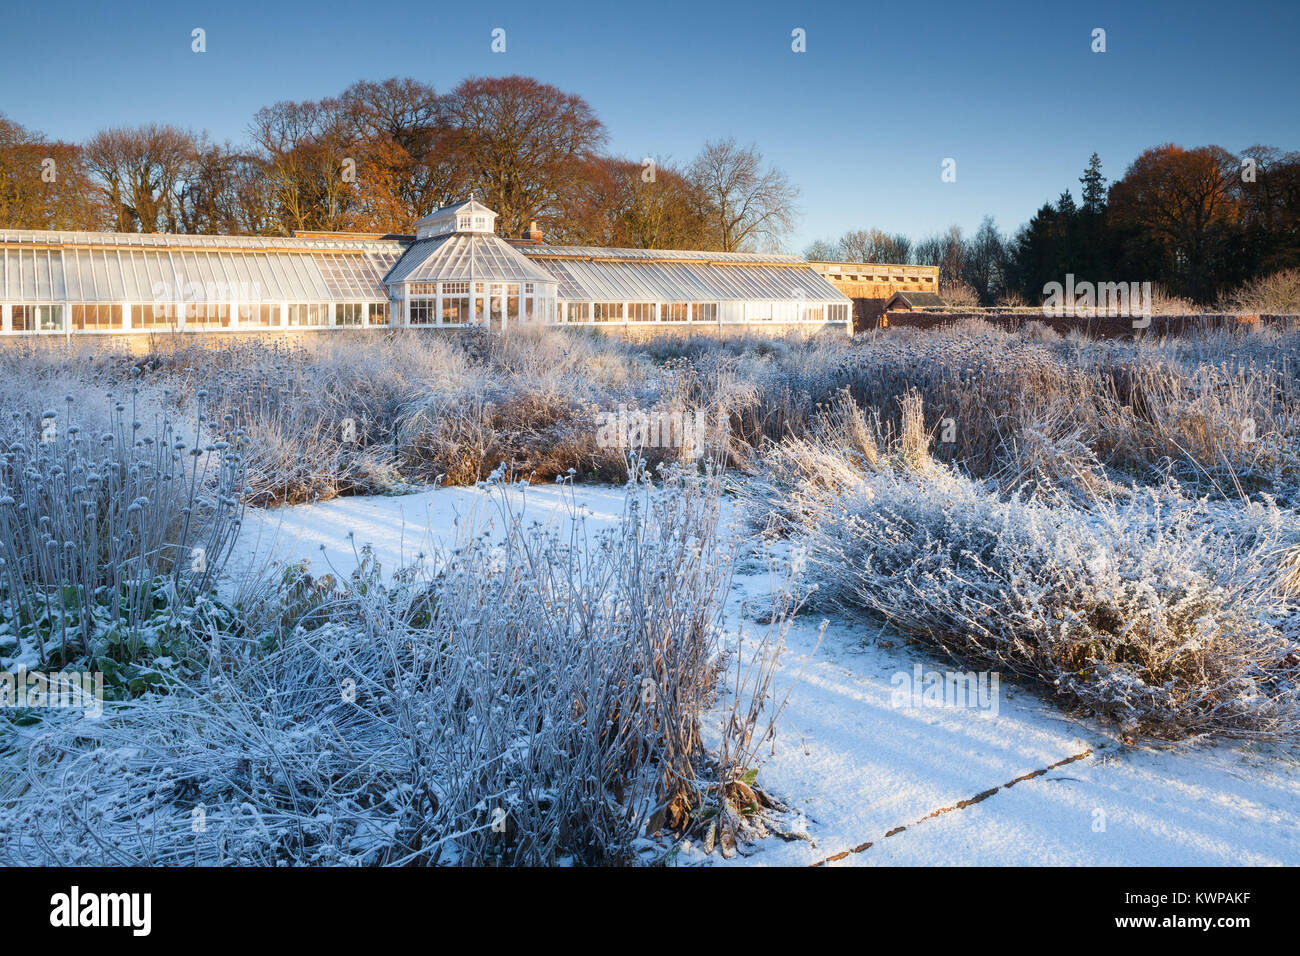 Scampston Walled Garden, North Yorkshire, Regno Unito. Inverno, dicembre 2017. Un quattro acri di giardino contemporaneo disegnato da Piet Oudolf. Foto Stock